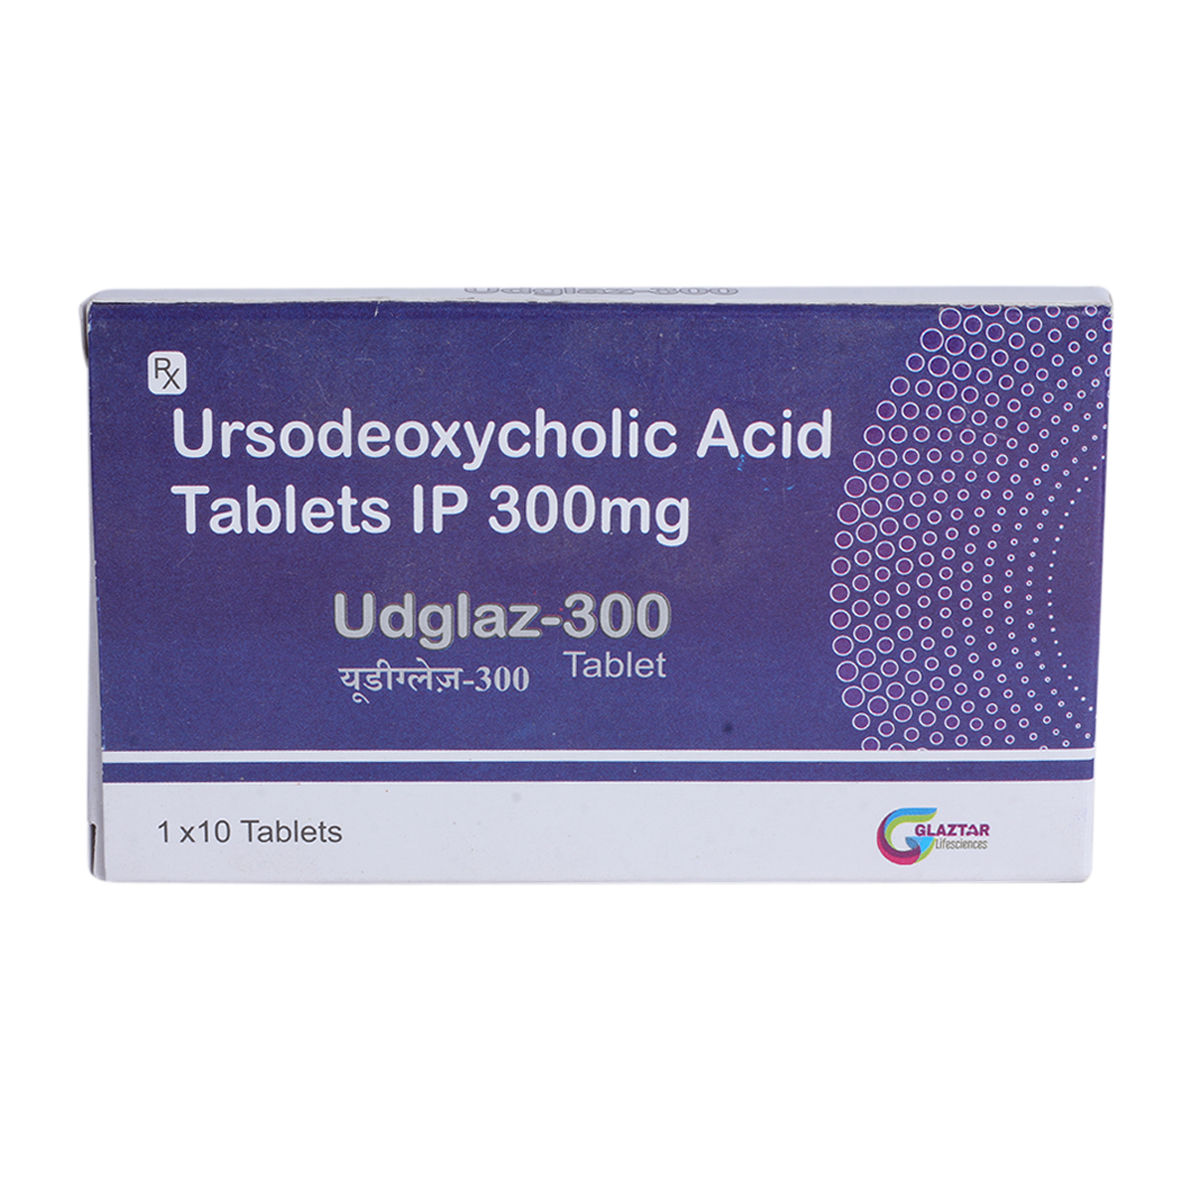 Udglaz-300 Tablet 10's, Pack of 10 TABLETS